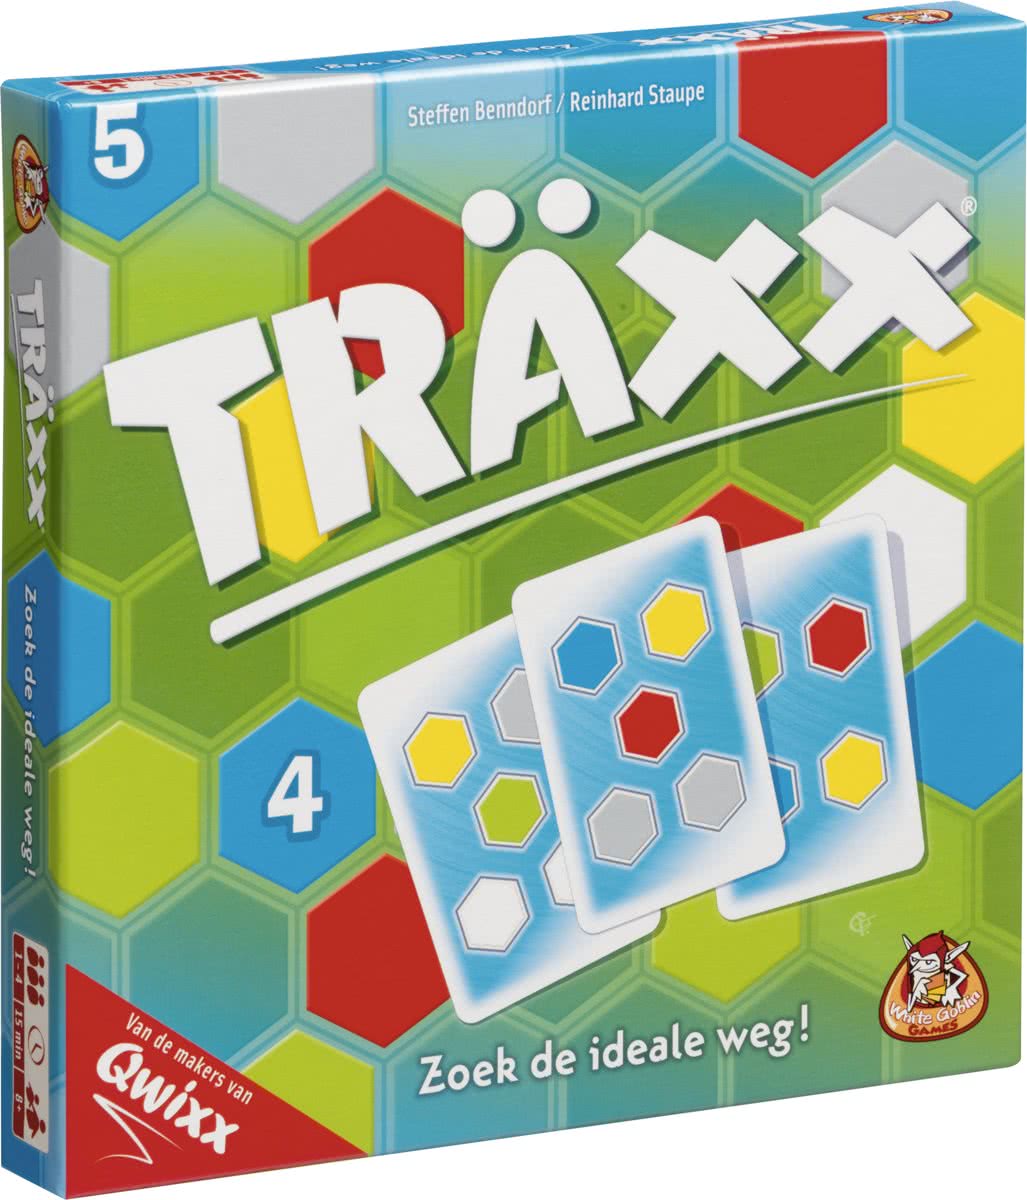 Träxx description reviews